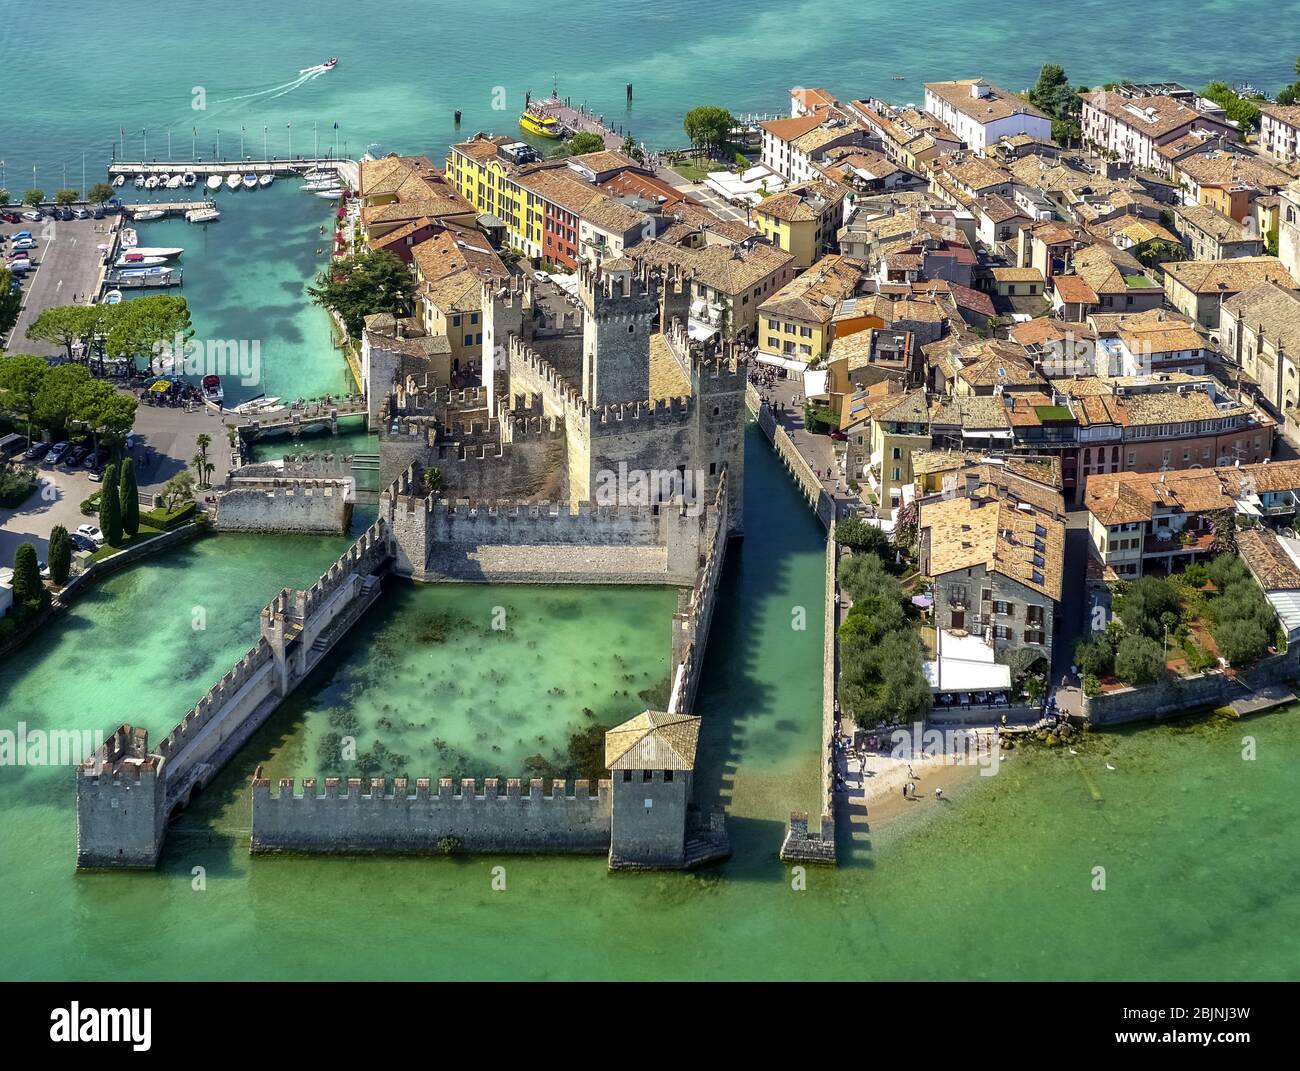 castel Castello di Sirmione sulla penisola Sirmione sul Lago di Garda, 01.09.2016, veduta aerea, Italia, Lombardia, Lago di Garda, Sirmione Foto Stock